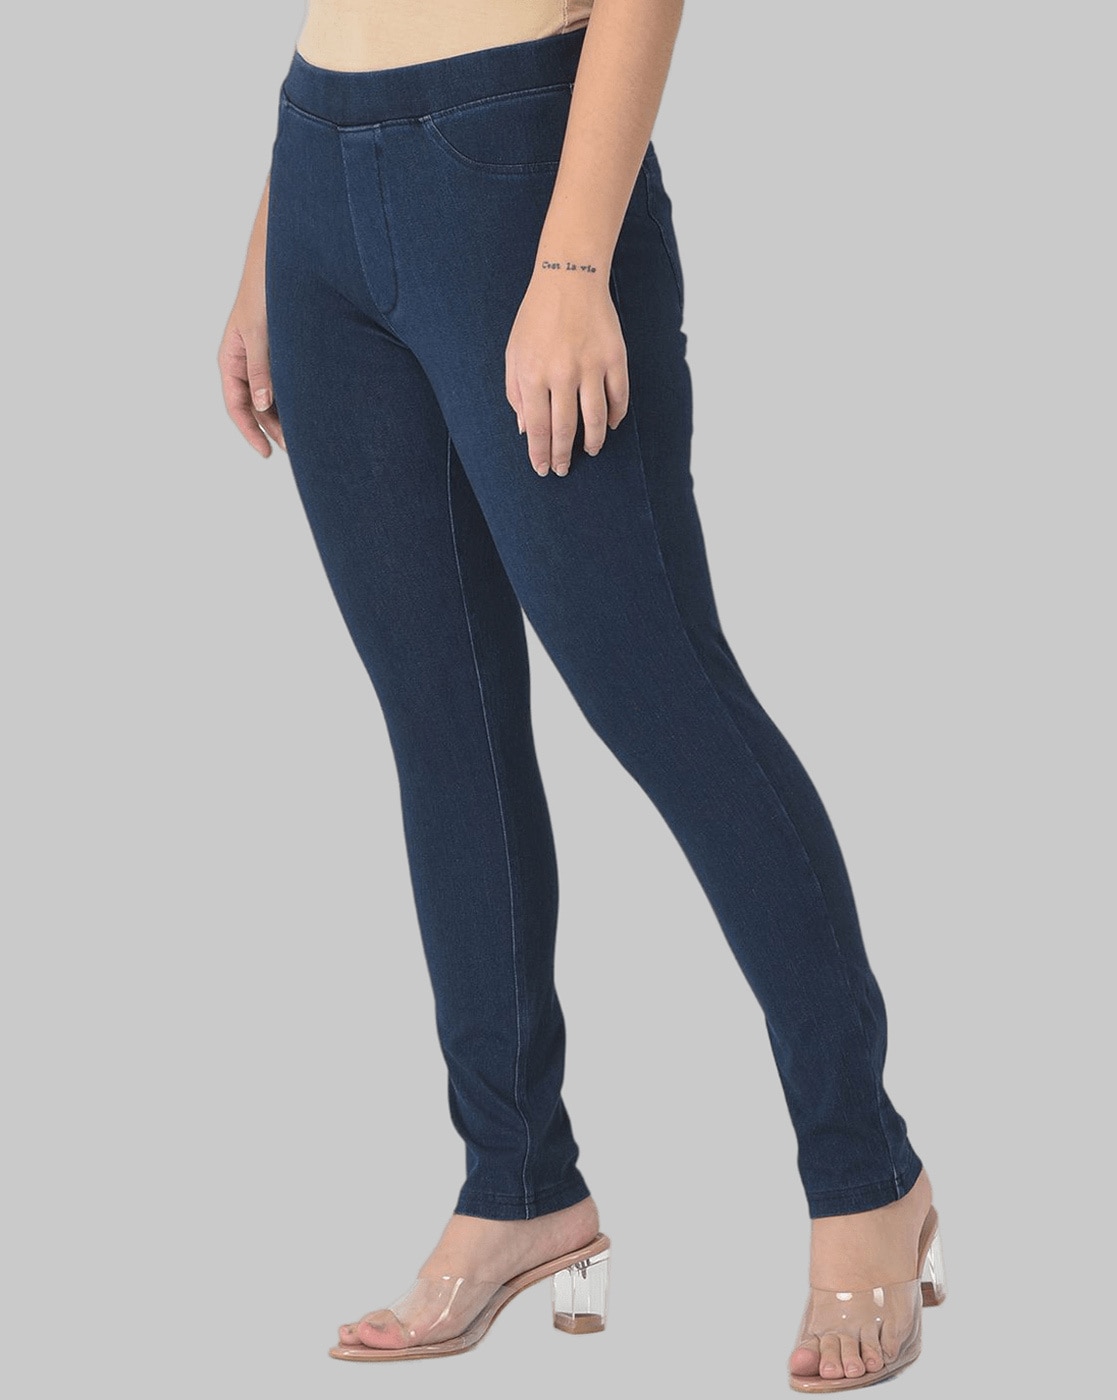 Buy Blue Jeans & Jeggings for Women by DOLLAR MISSY Online